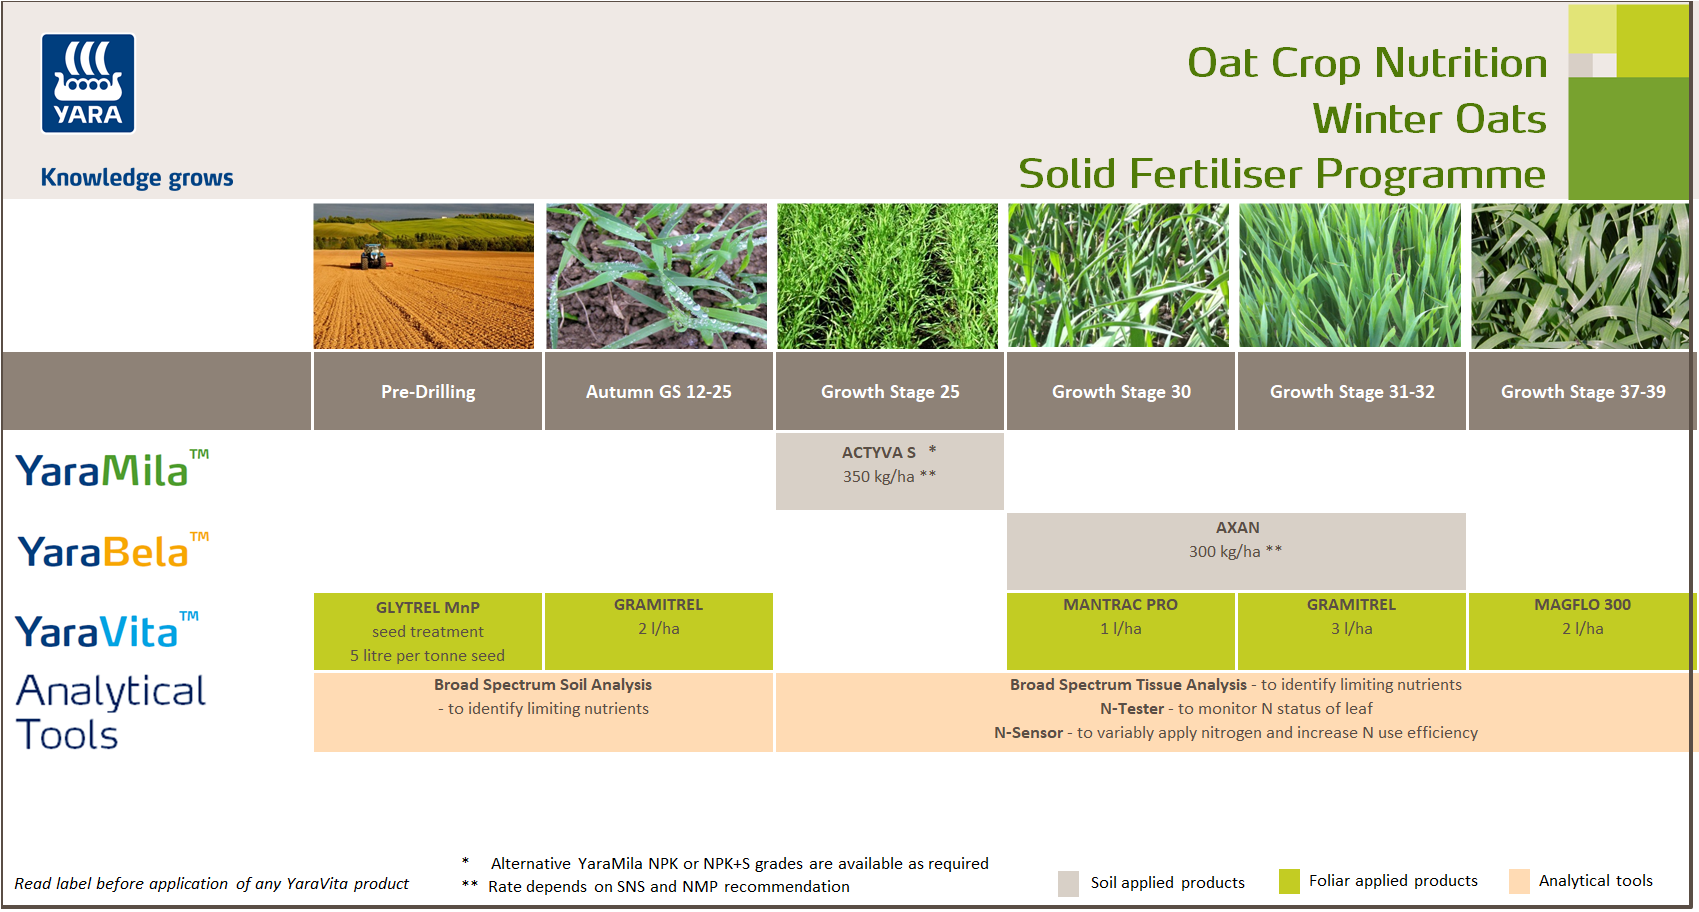 Winter oats fertiliser programme